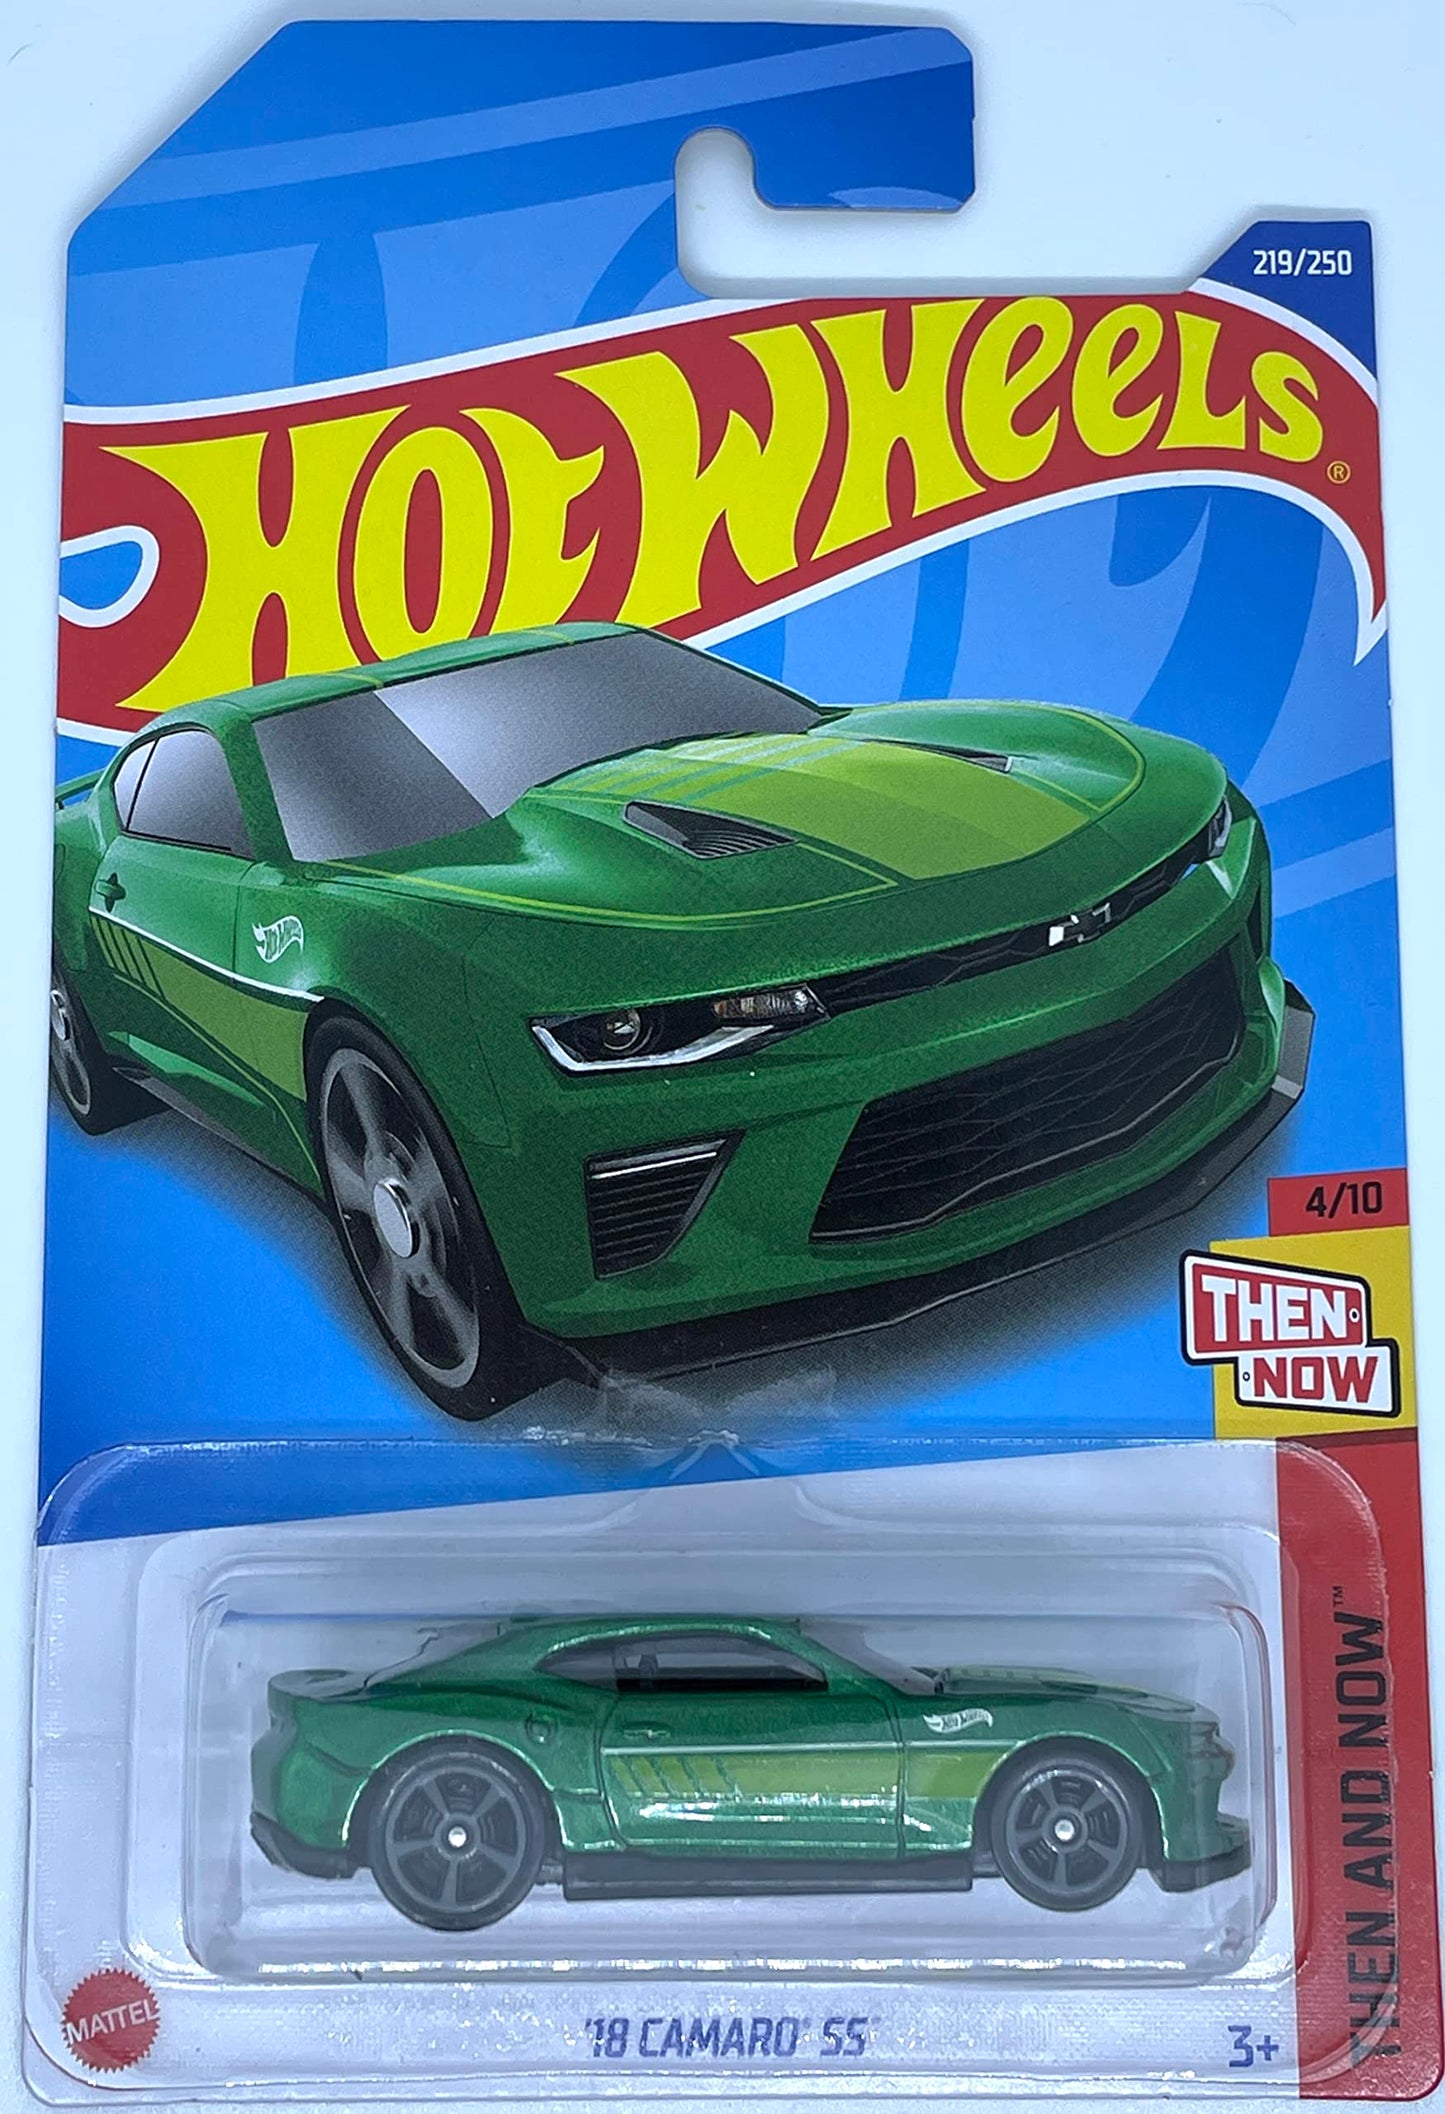 Hotwheels Key Custom FOB